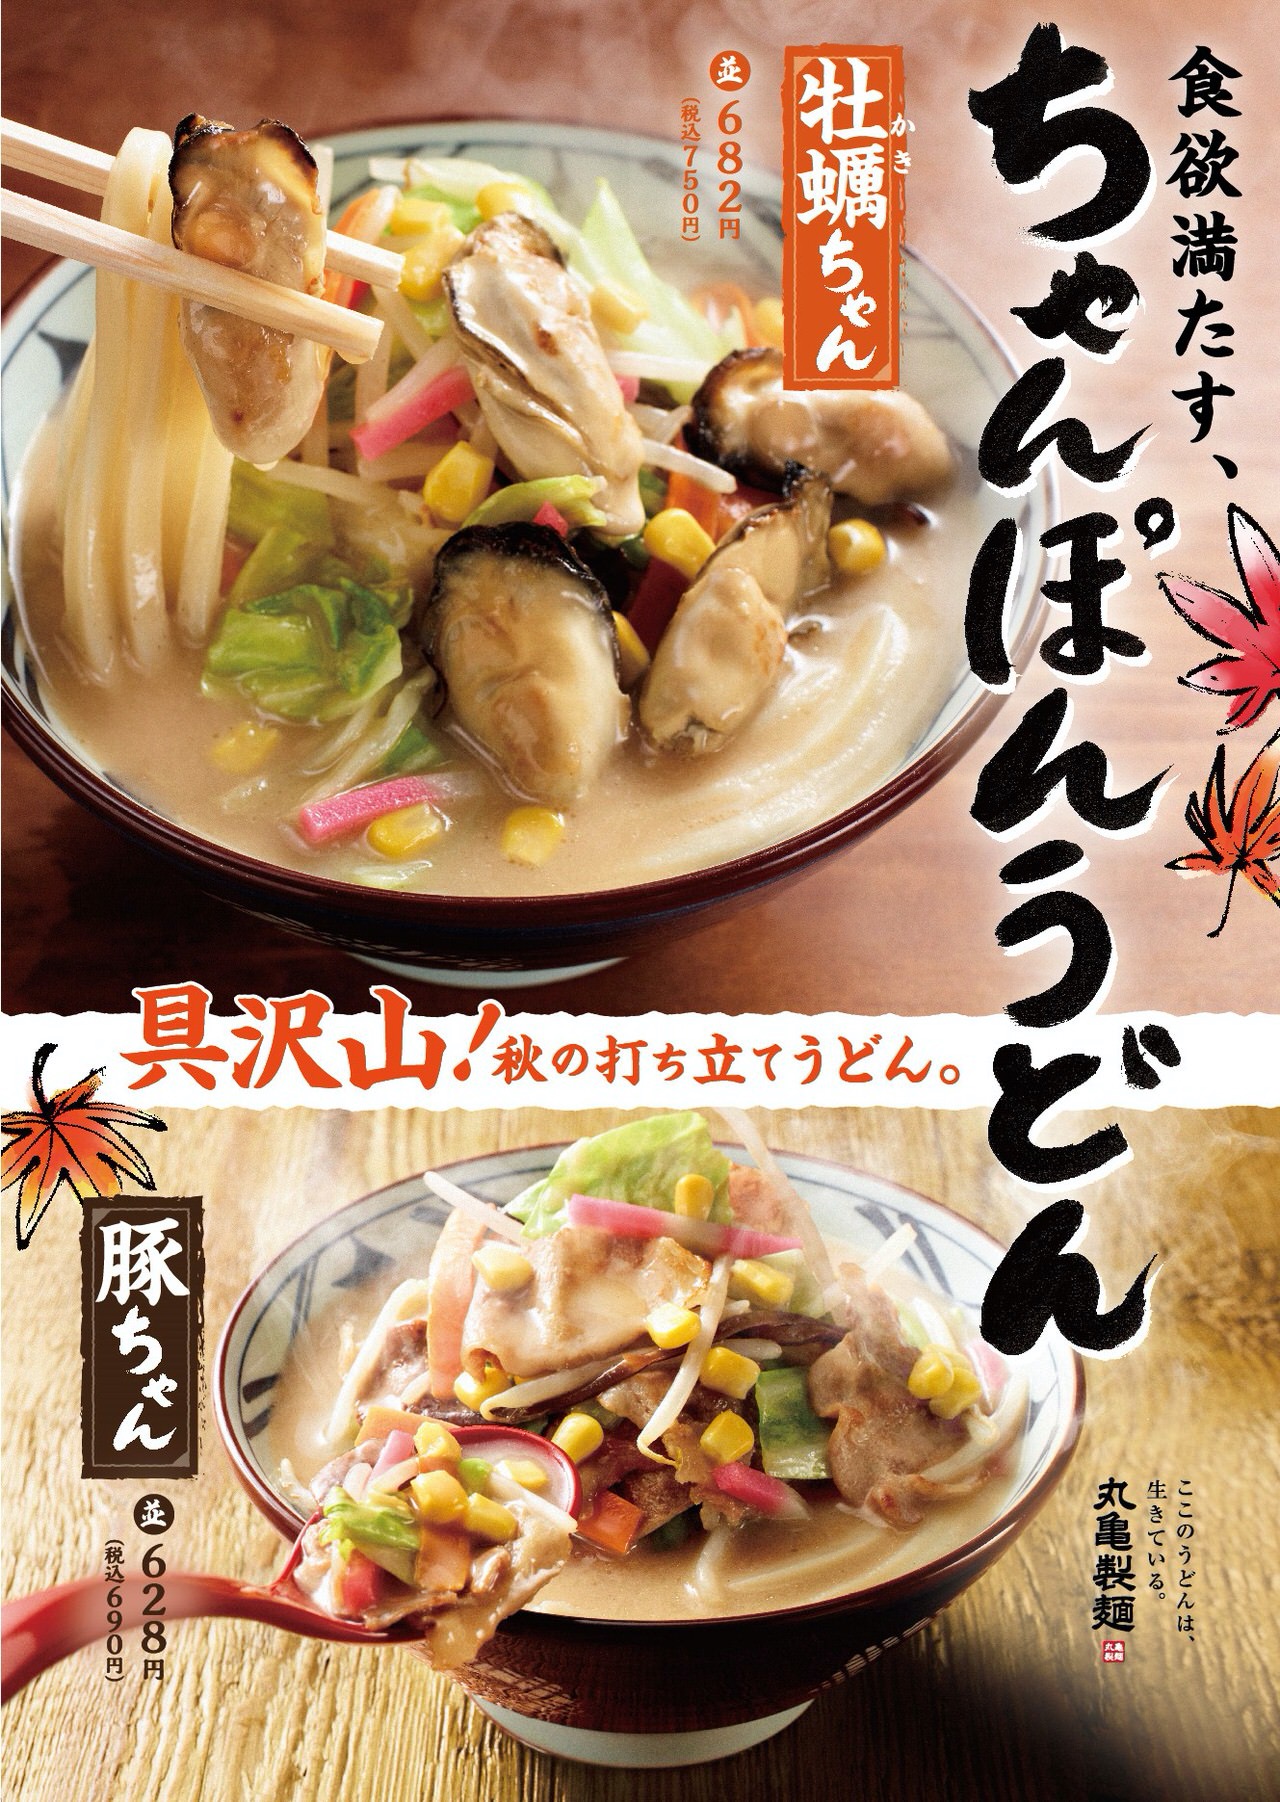 【丸亀製麺】広島県産浜ゆで牡蠣の旨みがたっぷりの「牡蠣ちゃんぽんうどん」発売開始